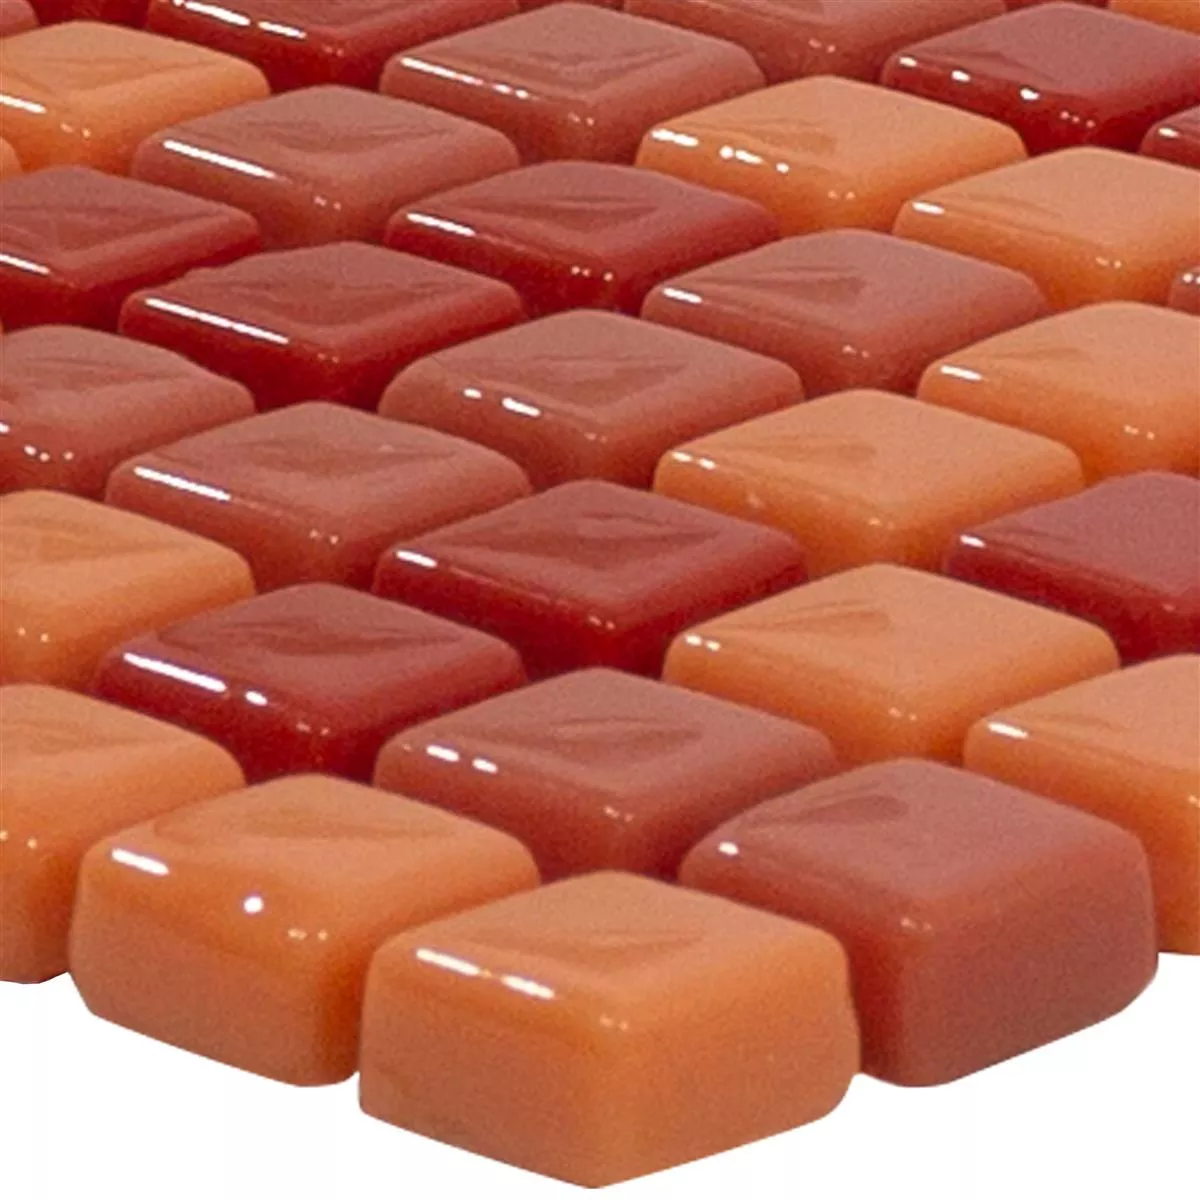 Mozaic De Sticlă Gresie Delight Roșu-Portocale Mix